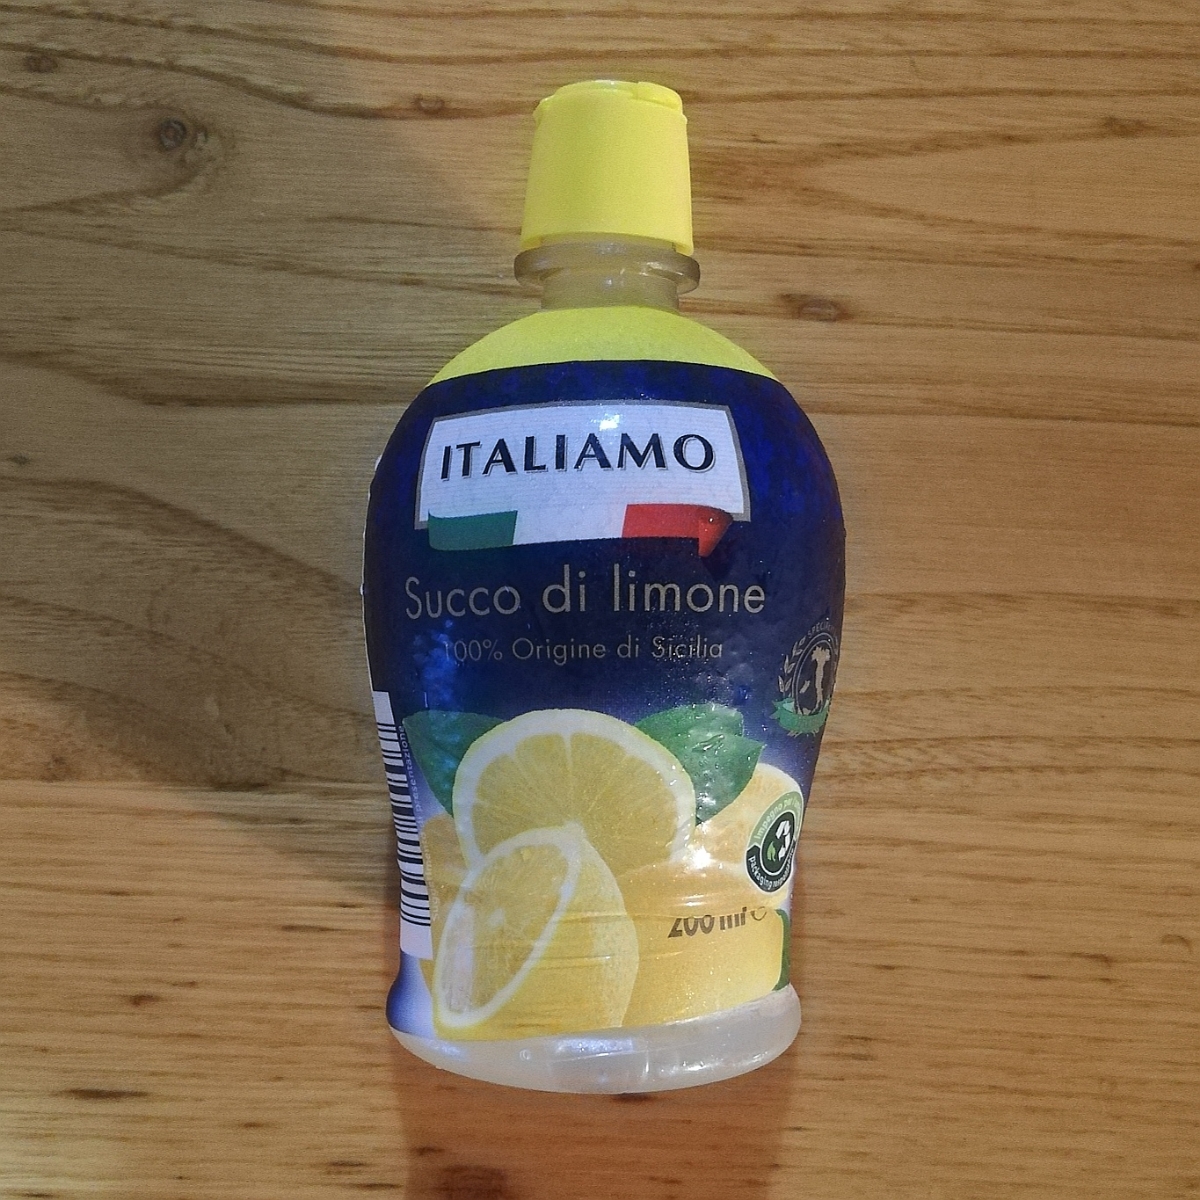 Italiamo Succo di limone Reviews